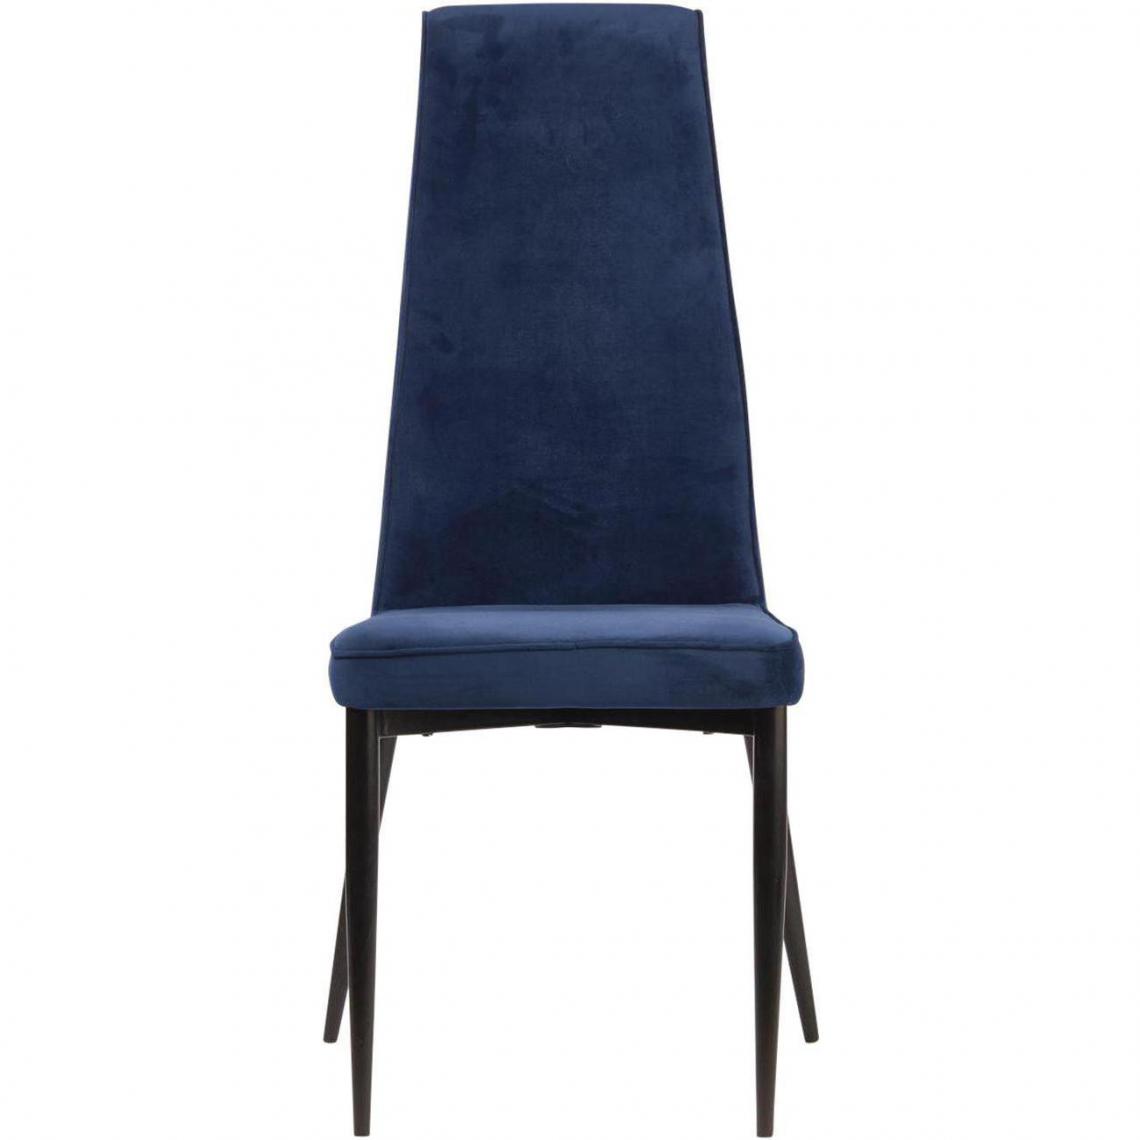 ATHM DESIGN - Lot de 4 - Chaise PRESTIGE Bleu - assise Velours pieds Metal Noir - Chaises